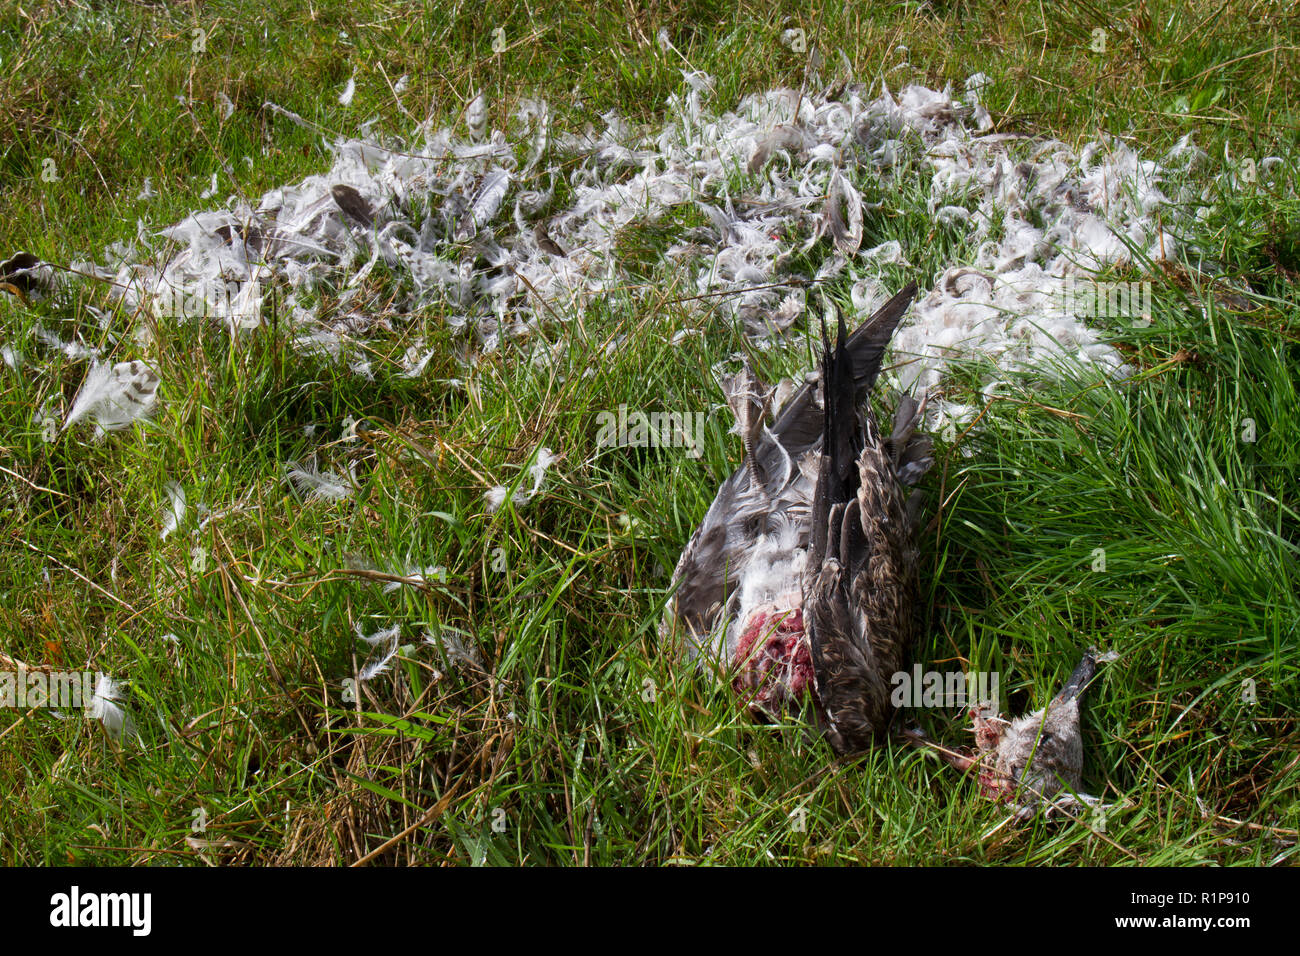 Heringsmöwe (Larus fuscus) bleibt der ein Jugendlicher getötet und zum Teil gefressen von einem Raubvogel, wahrscheinlich ein WANDERFALKE (FALCO PEREGRINUS Stockfoto